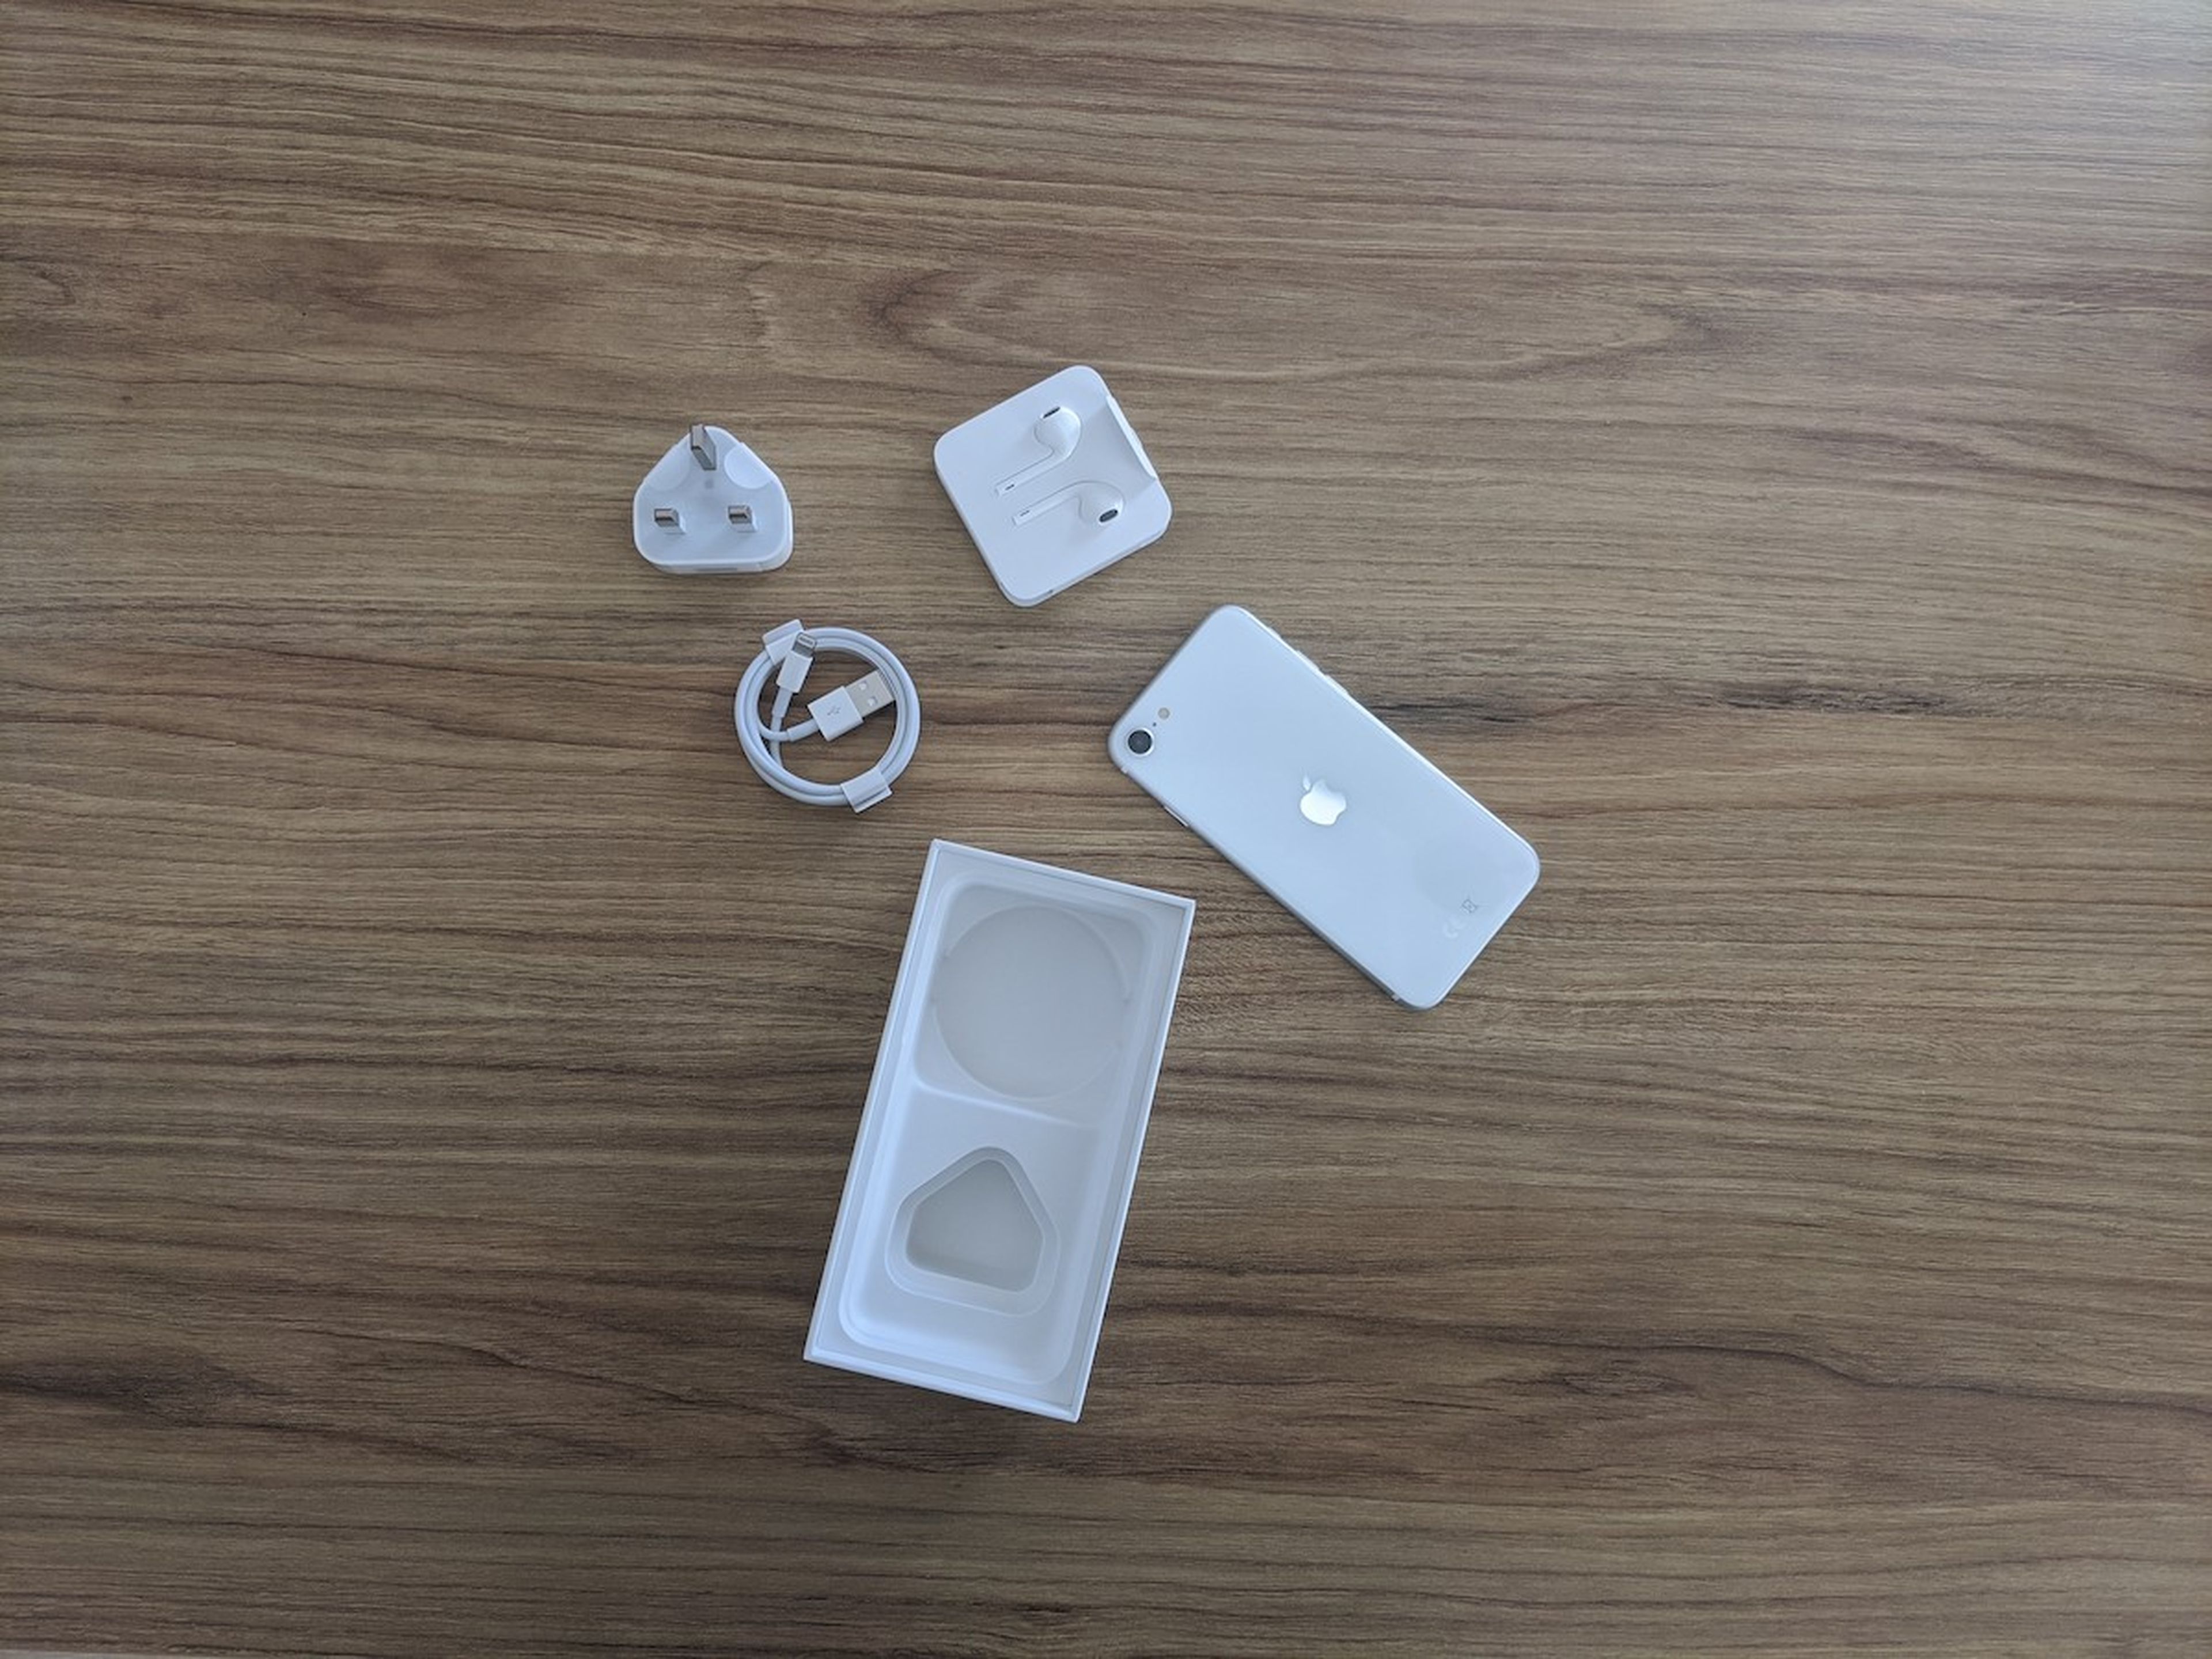 Investigación Girar Factor malo El iPhone 12 no incluirá auriculares gratis en la caja, según rumores |  Computer Hoy